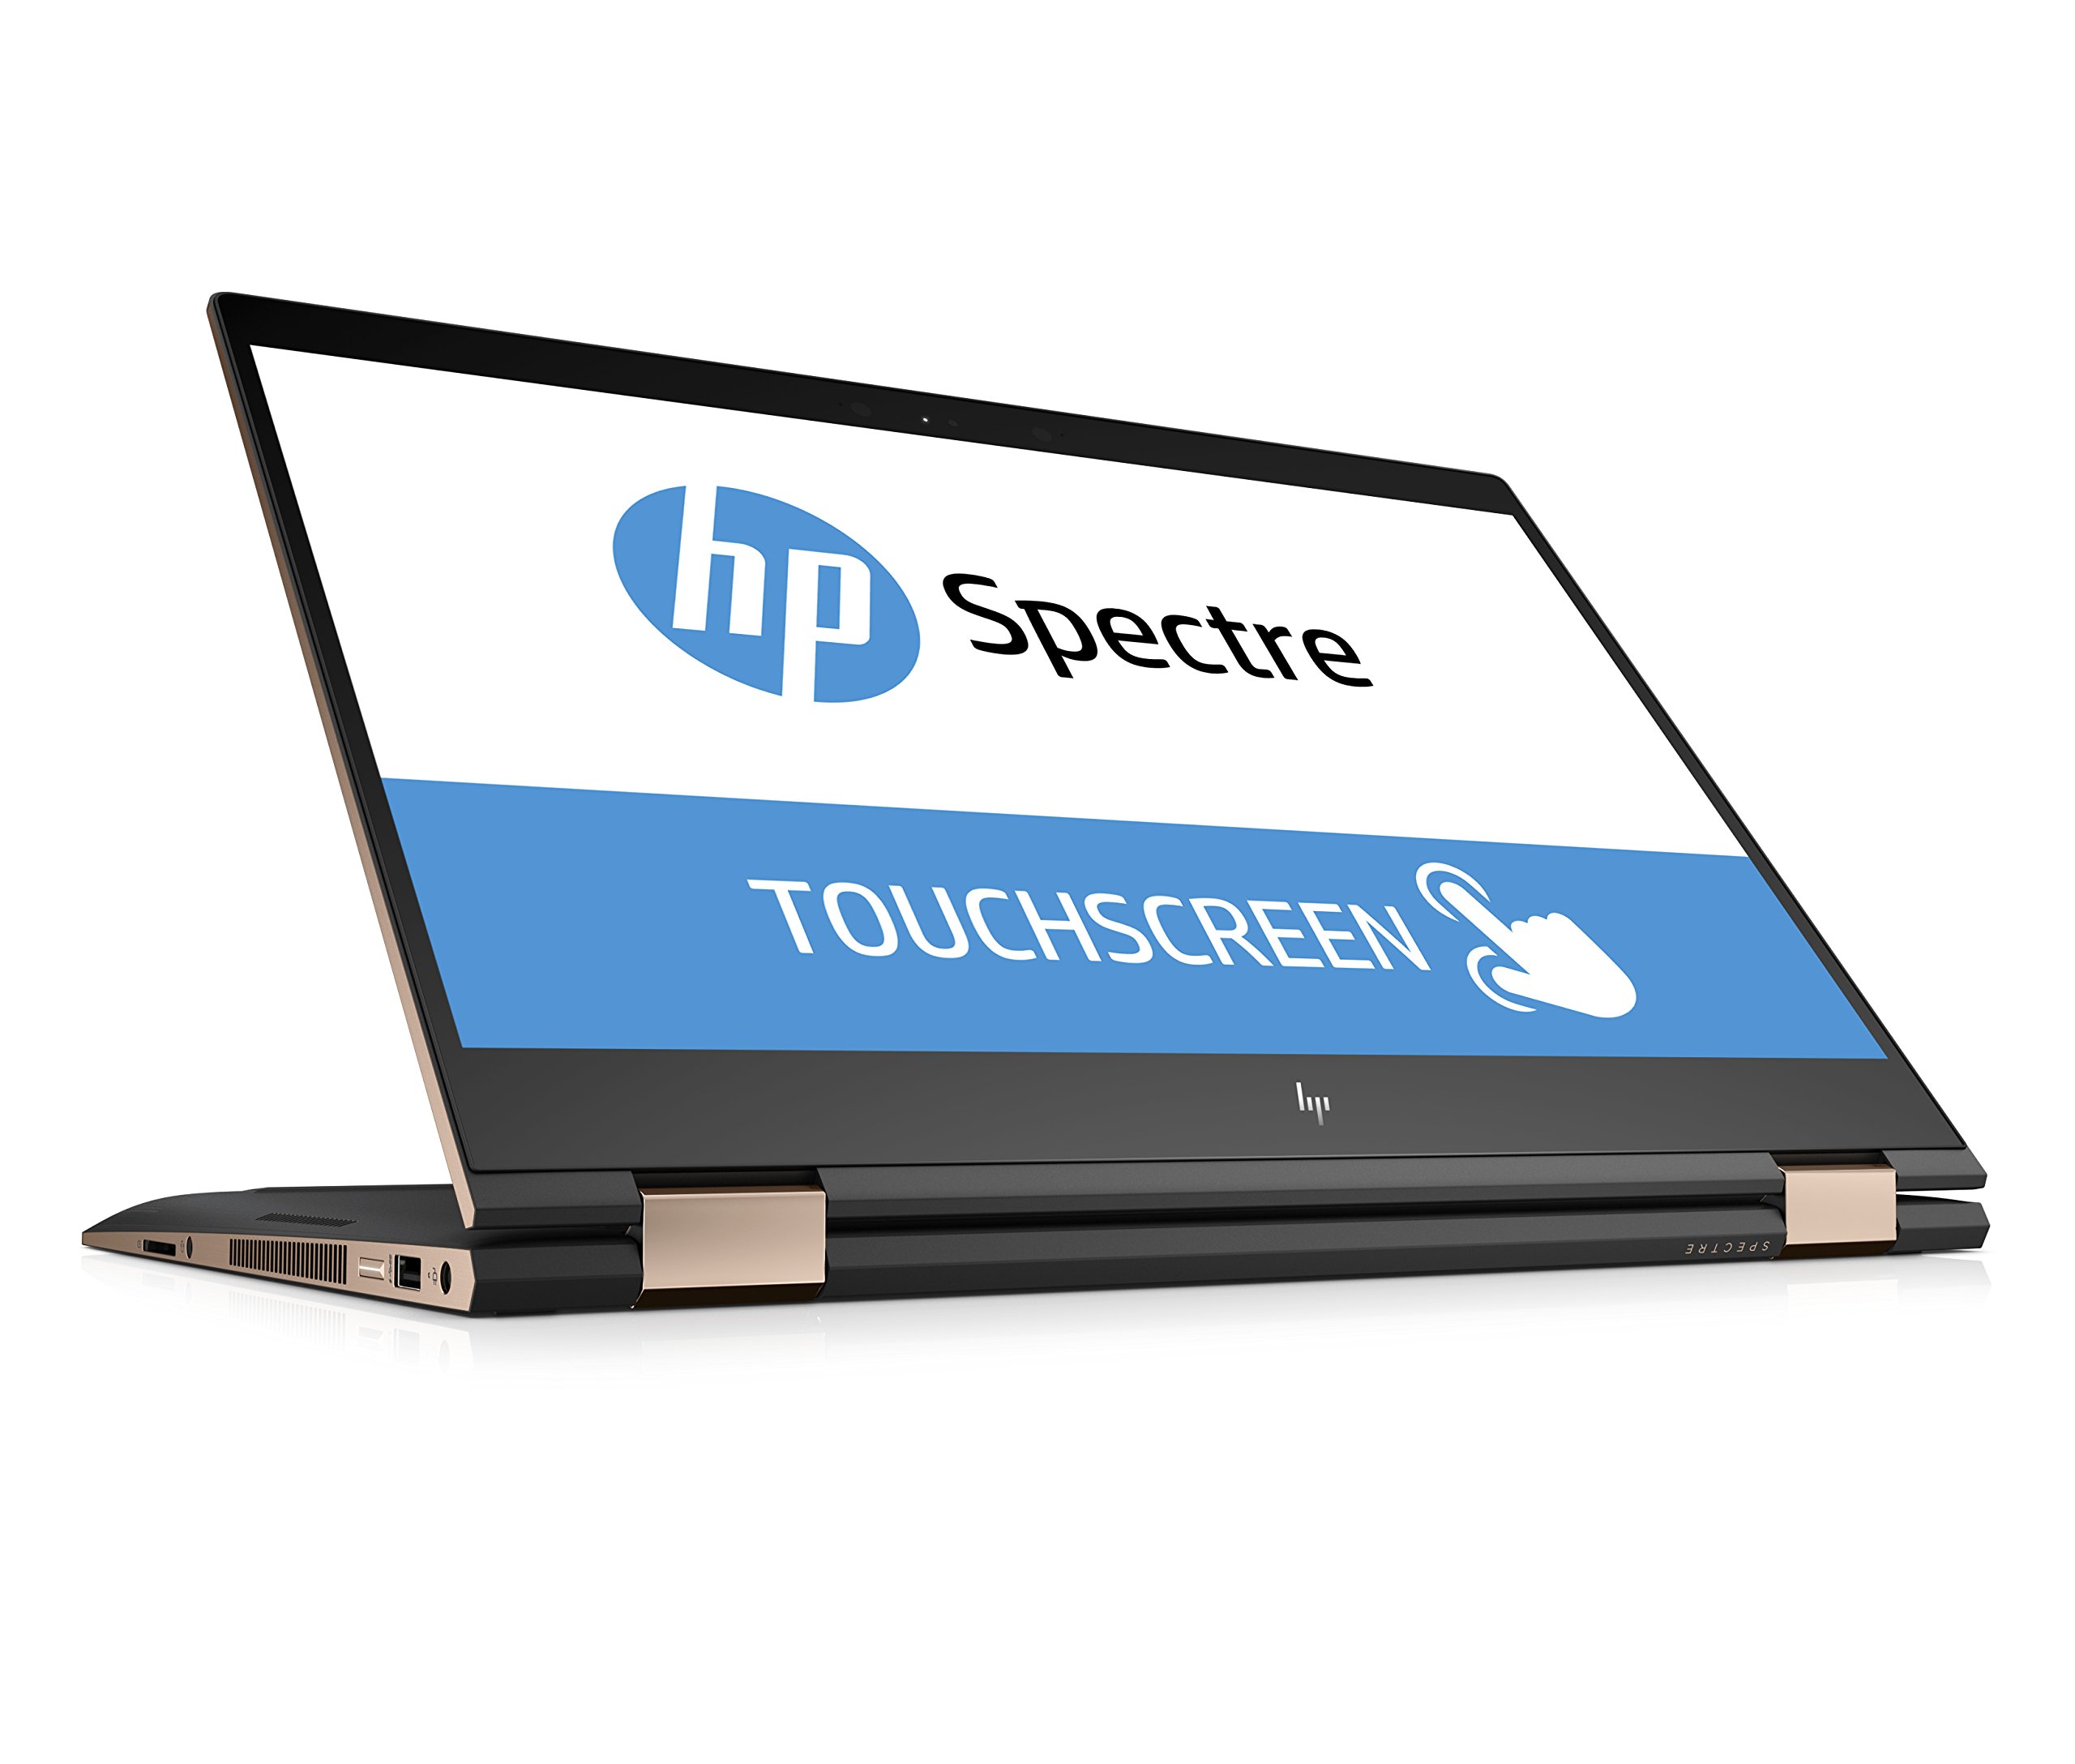 HP Spectre x360 laptop with headphones icon